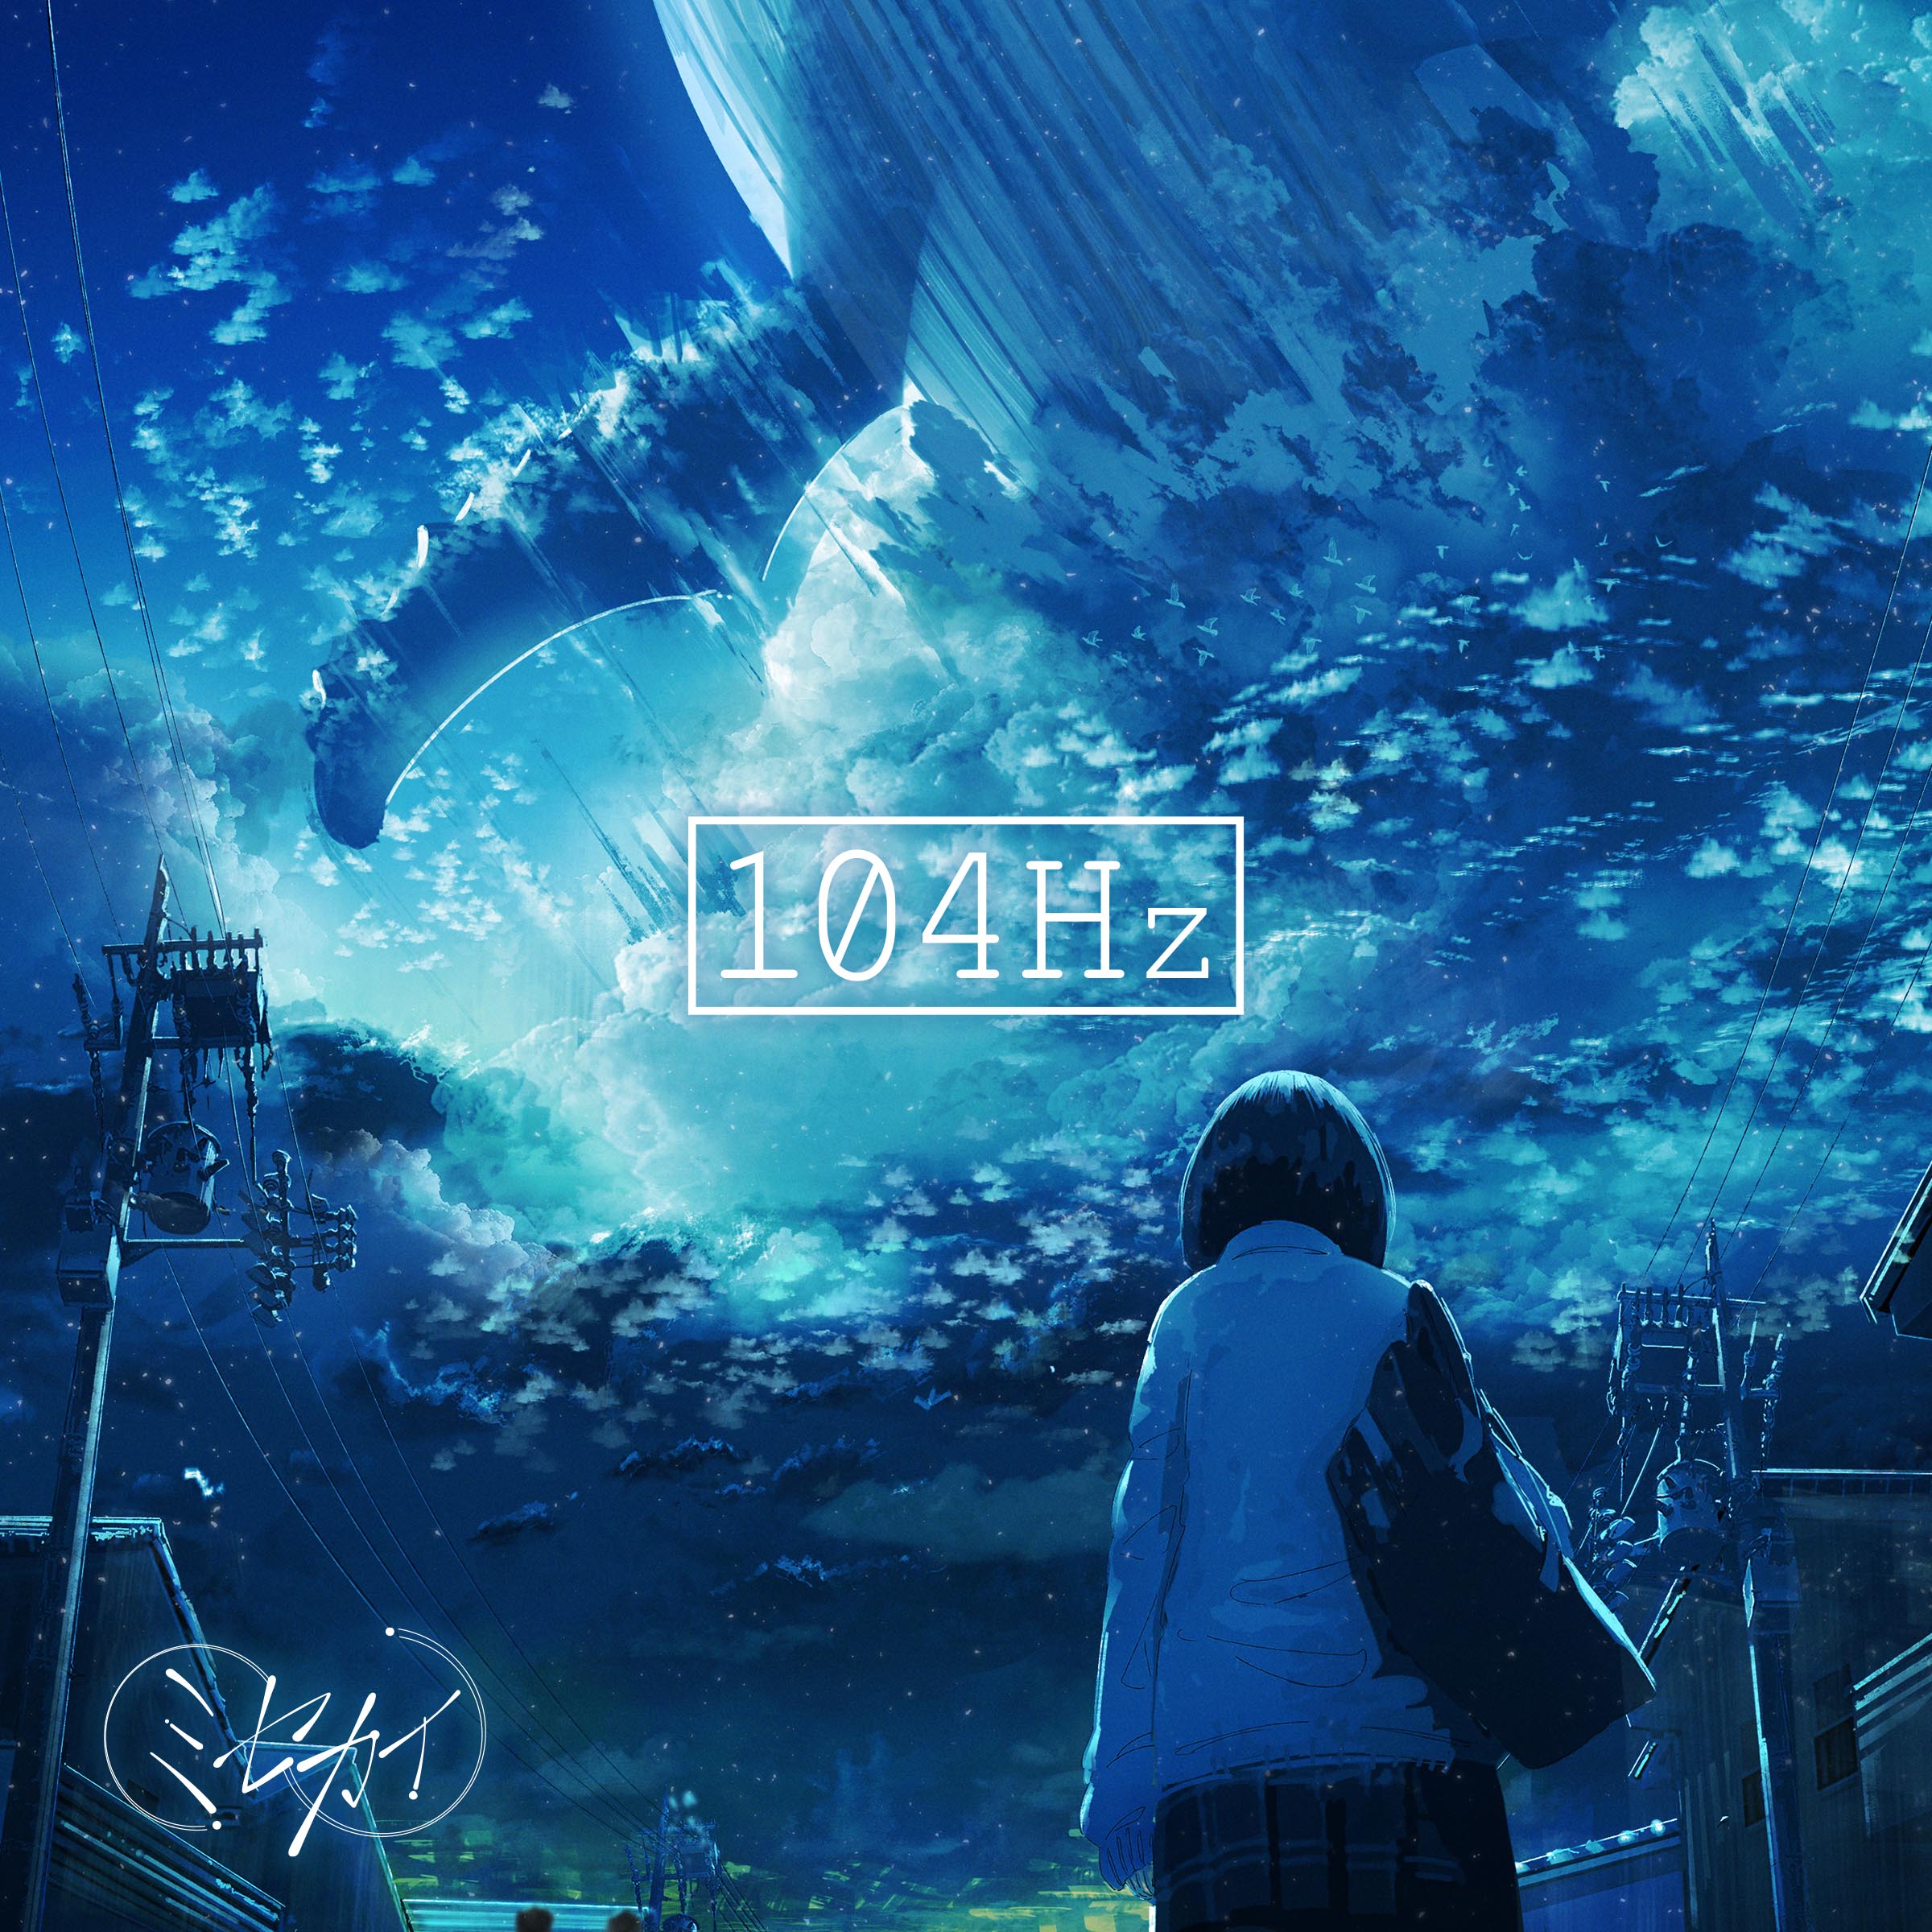 Misekai 104Hz cover artwork